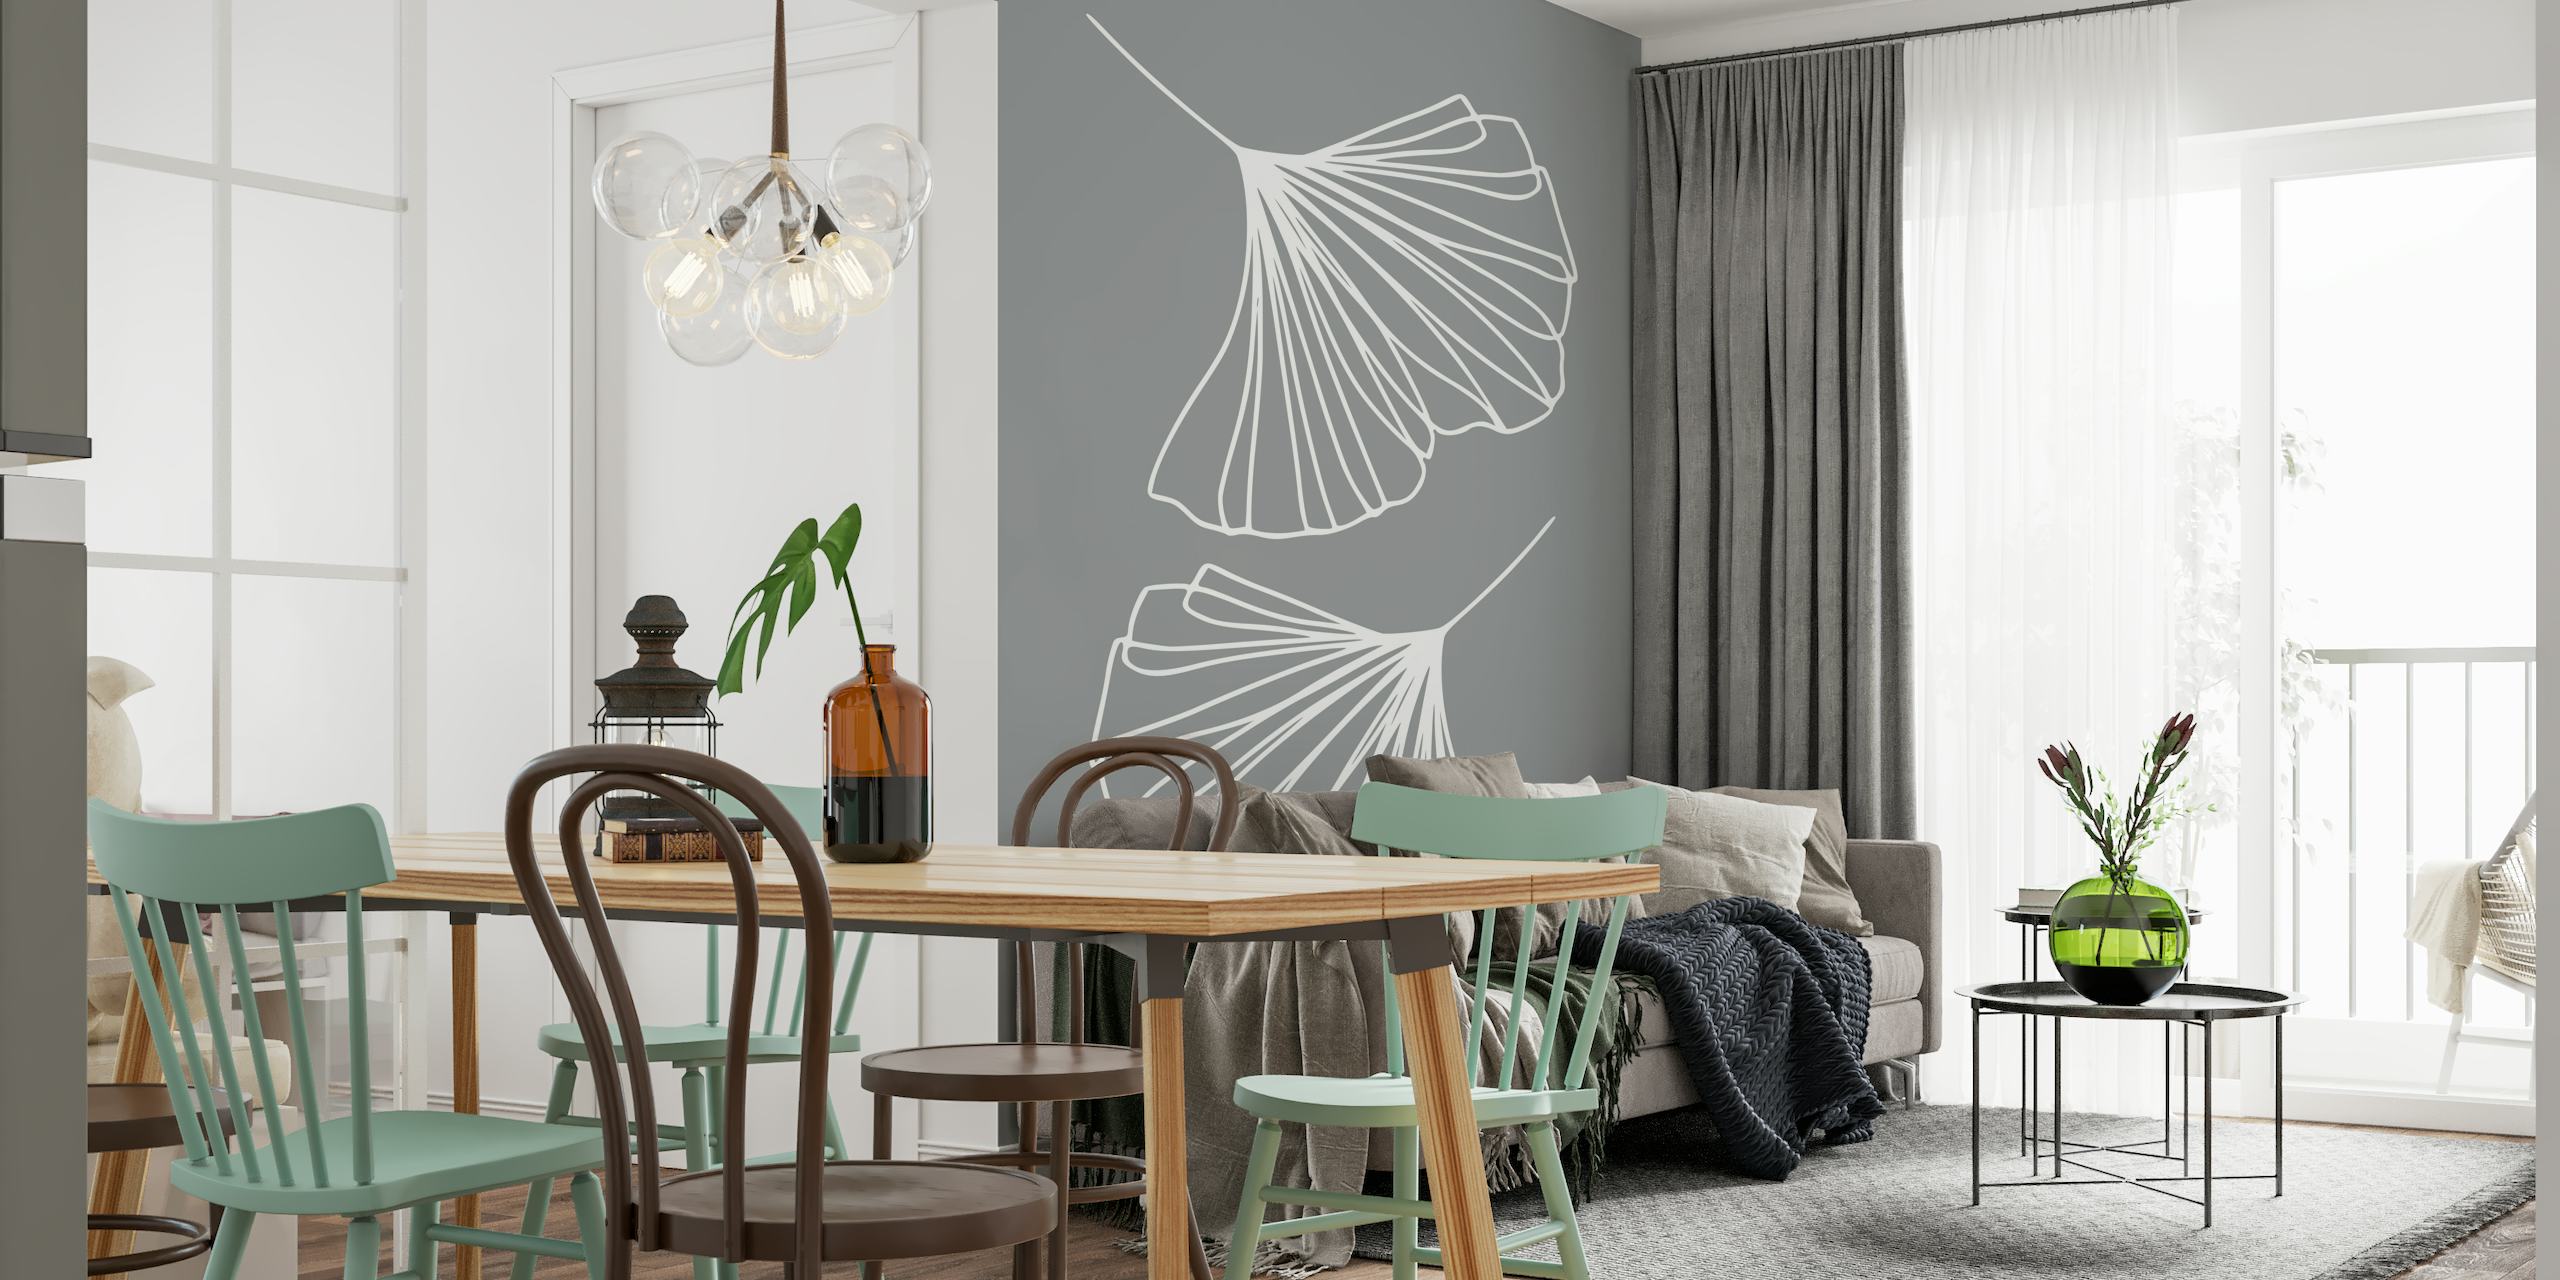 Ginkgo Leaves Ultimate Gray Wandbild mit weißer Strichzeichnung auf grauem Hintergrund